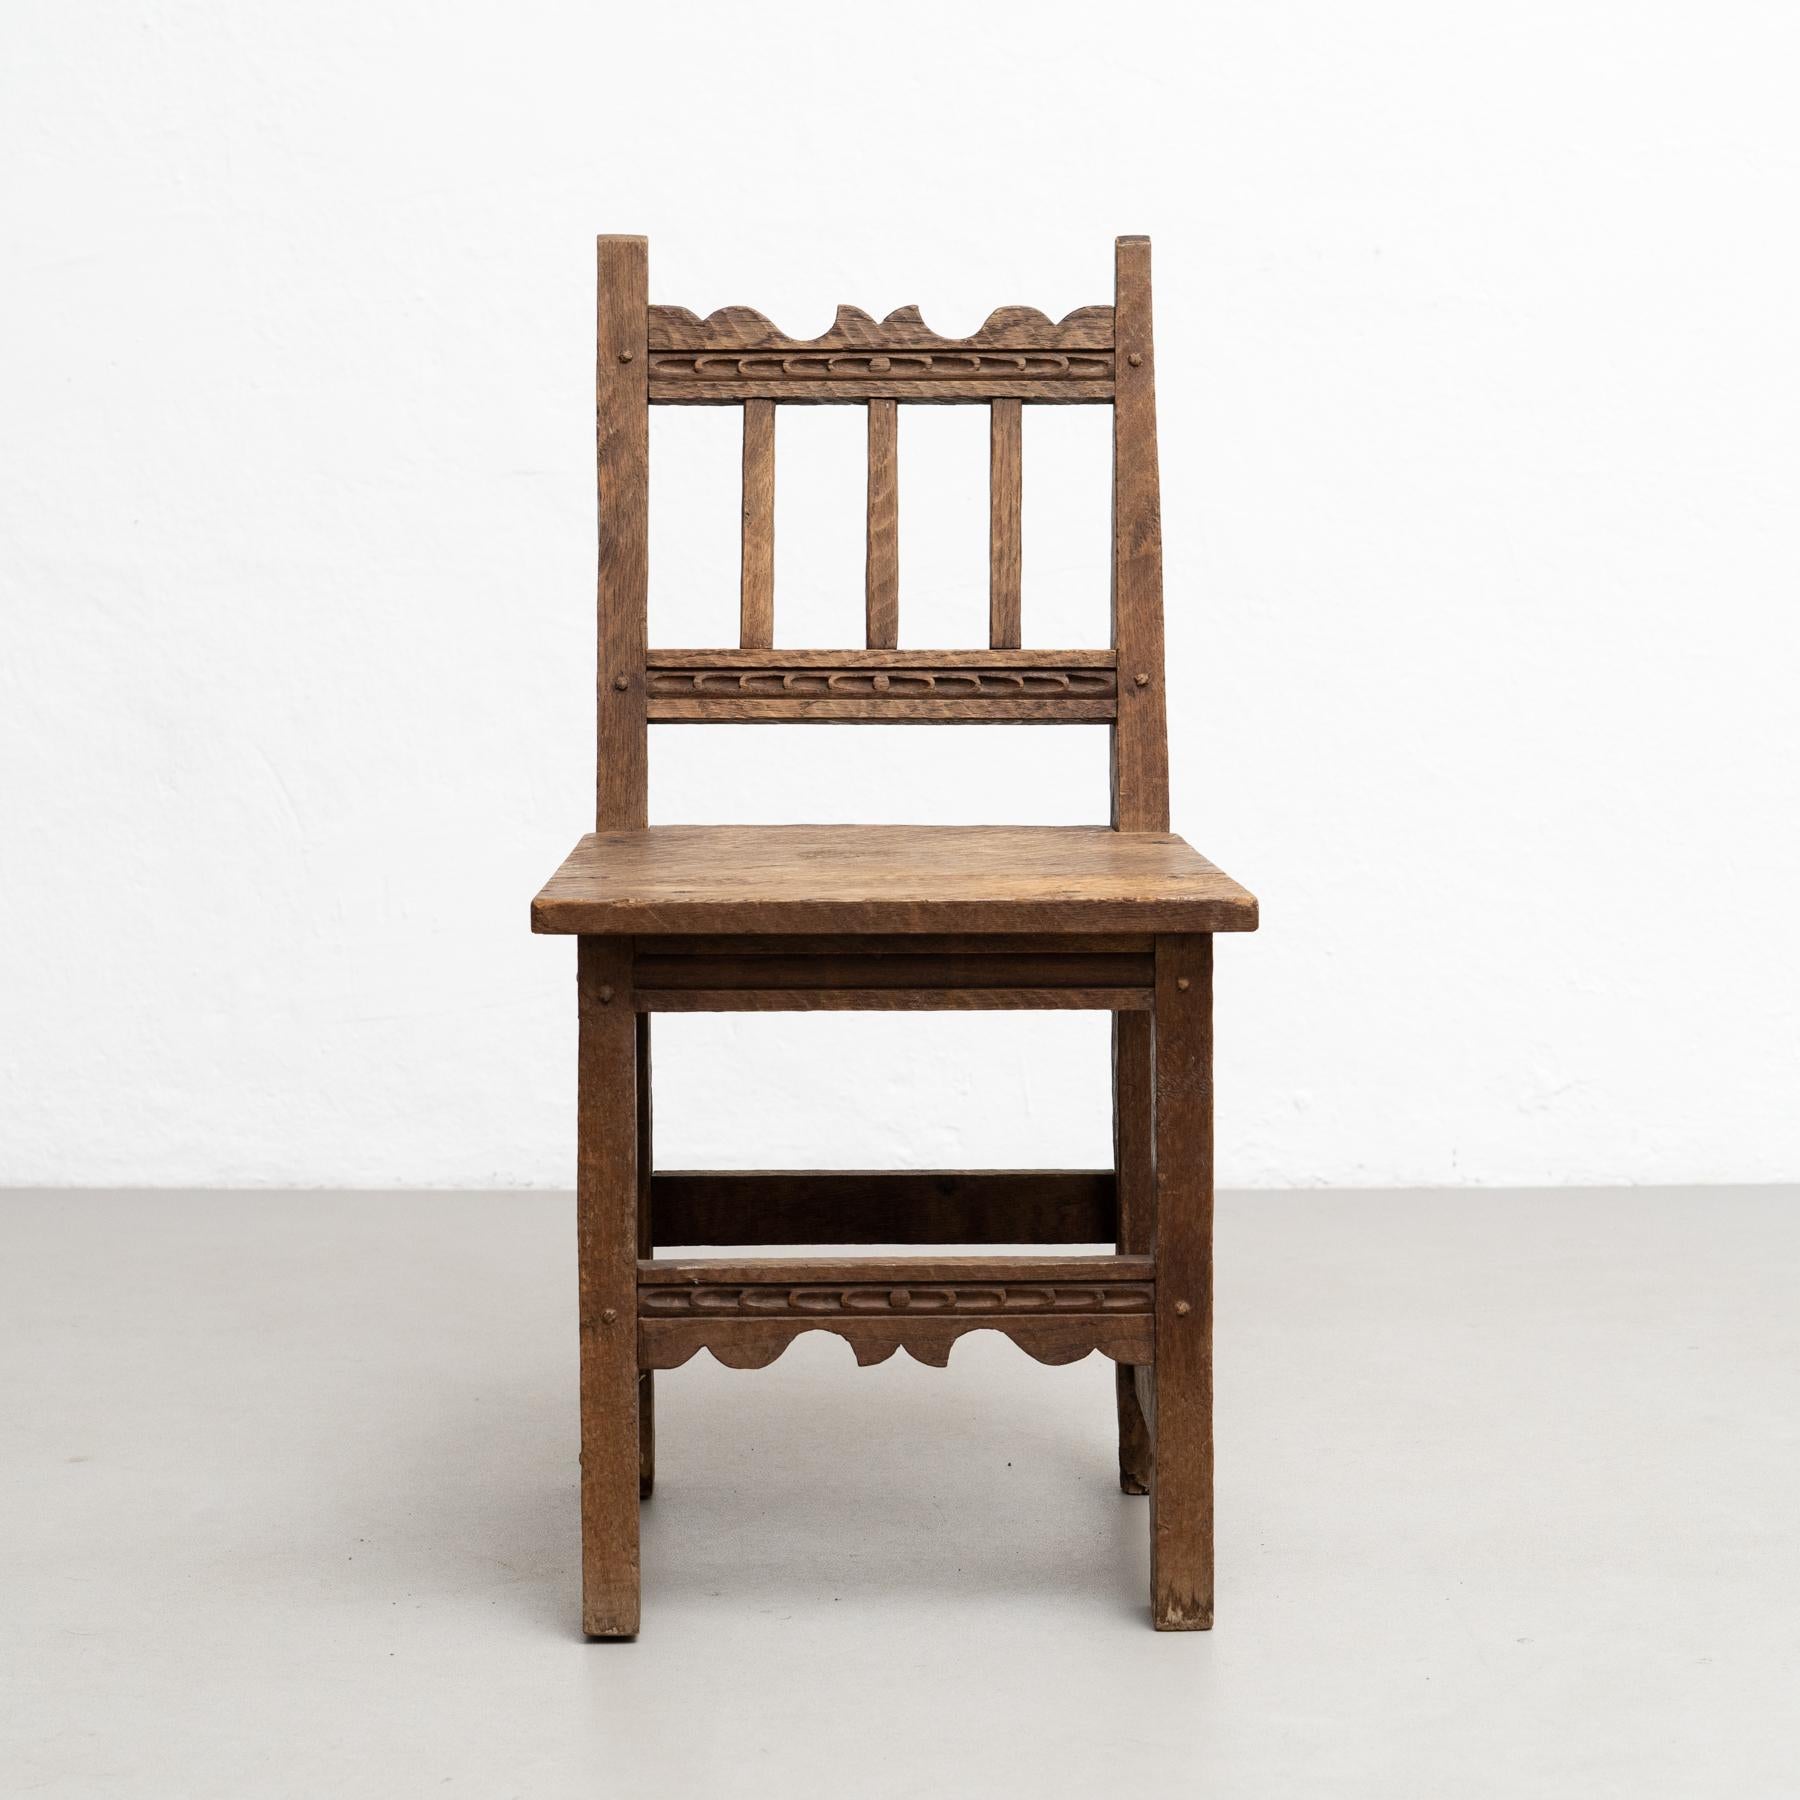 Conjunto de cuatro sillas de madera racionalistas modernas de mediados de siglo, encanto rústico, hacia 1940 Francés